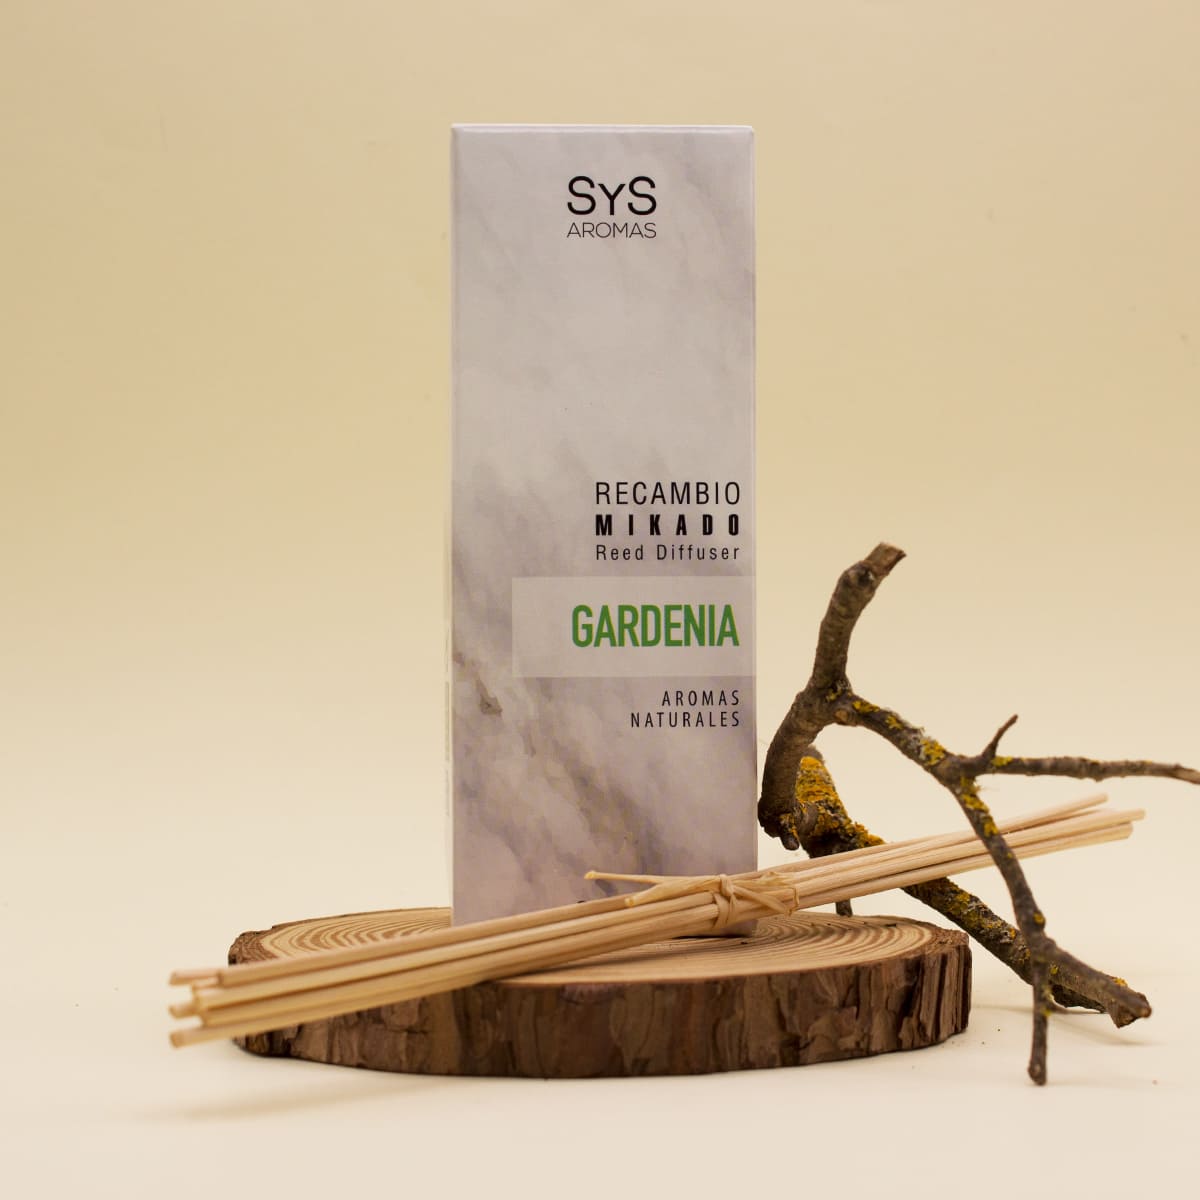 Comprar Recambio Mikado Gardenia 200ml + Palos Marmol Collection SYS Aromas